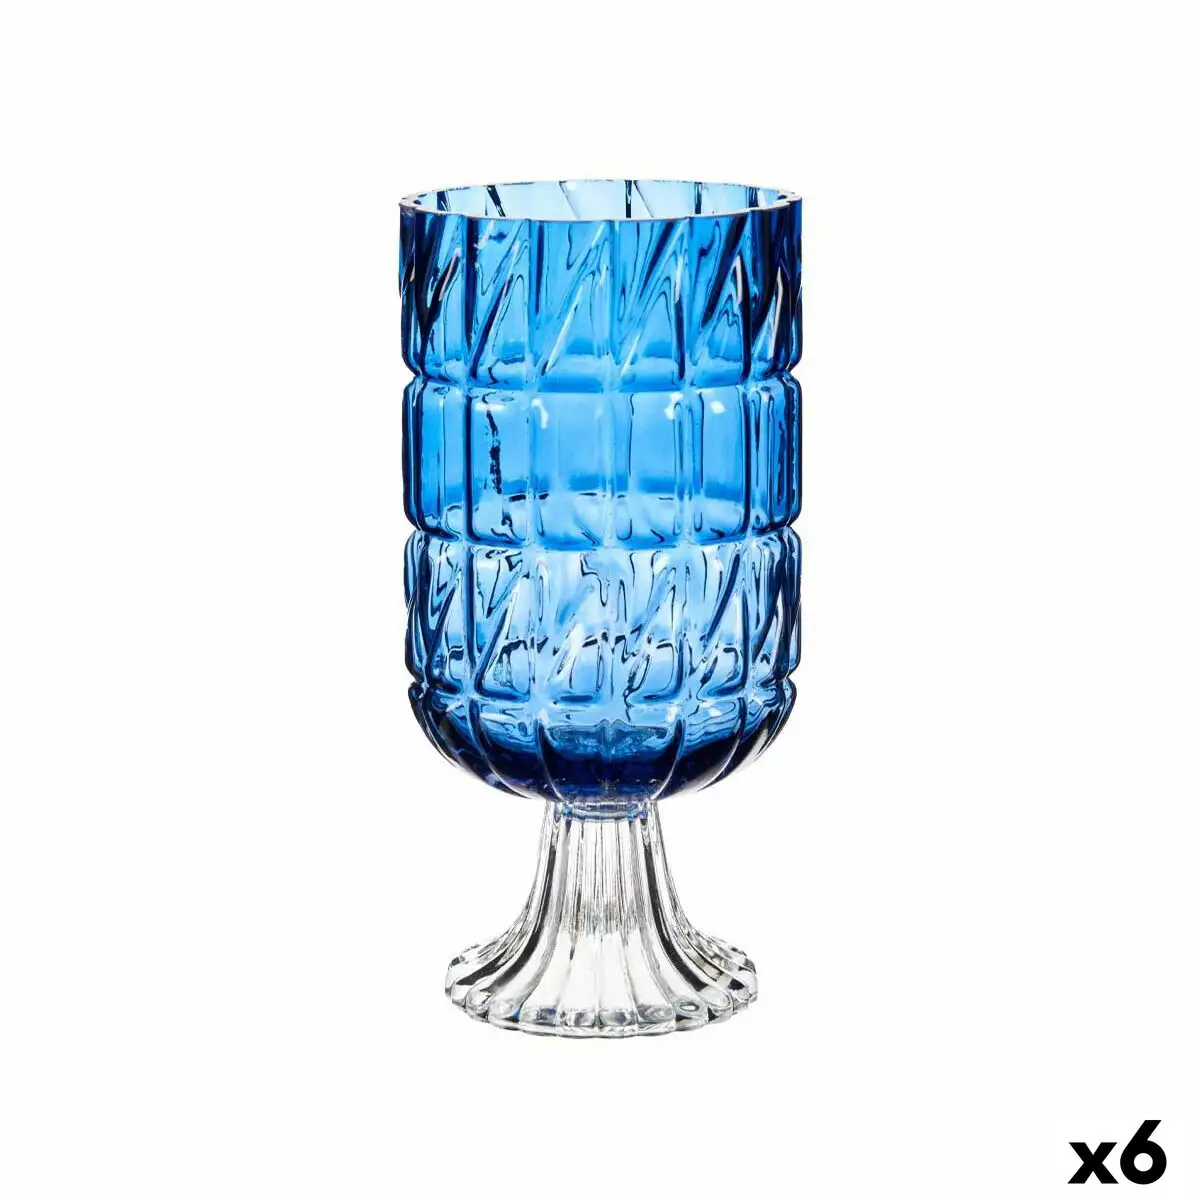 Vase taille bleu verre 13 x 26 5 x 13 cm 6 unites _6923. Bienvenue chez DIAYTAR SENEGAL - Où Chaque Objet a sa Propre Histoire. Découvrez notre sélection soigneusement choisie et choisissez des produits qui racontent le patrimoine sénégalais.